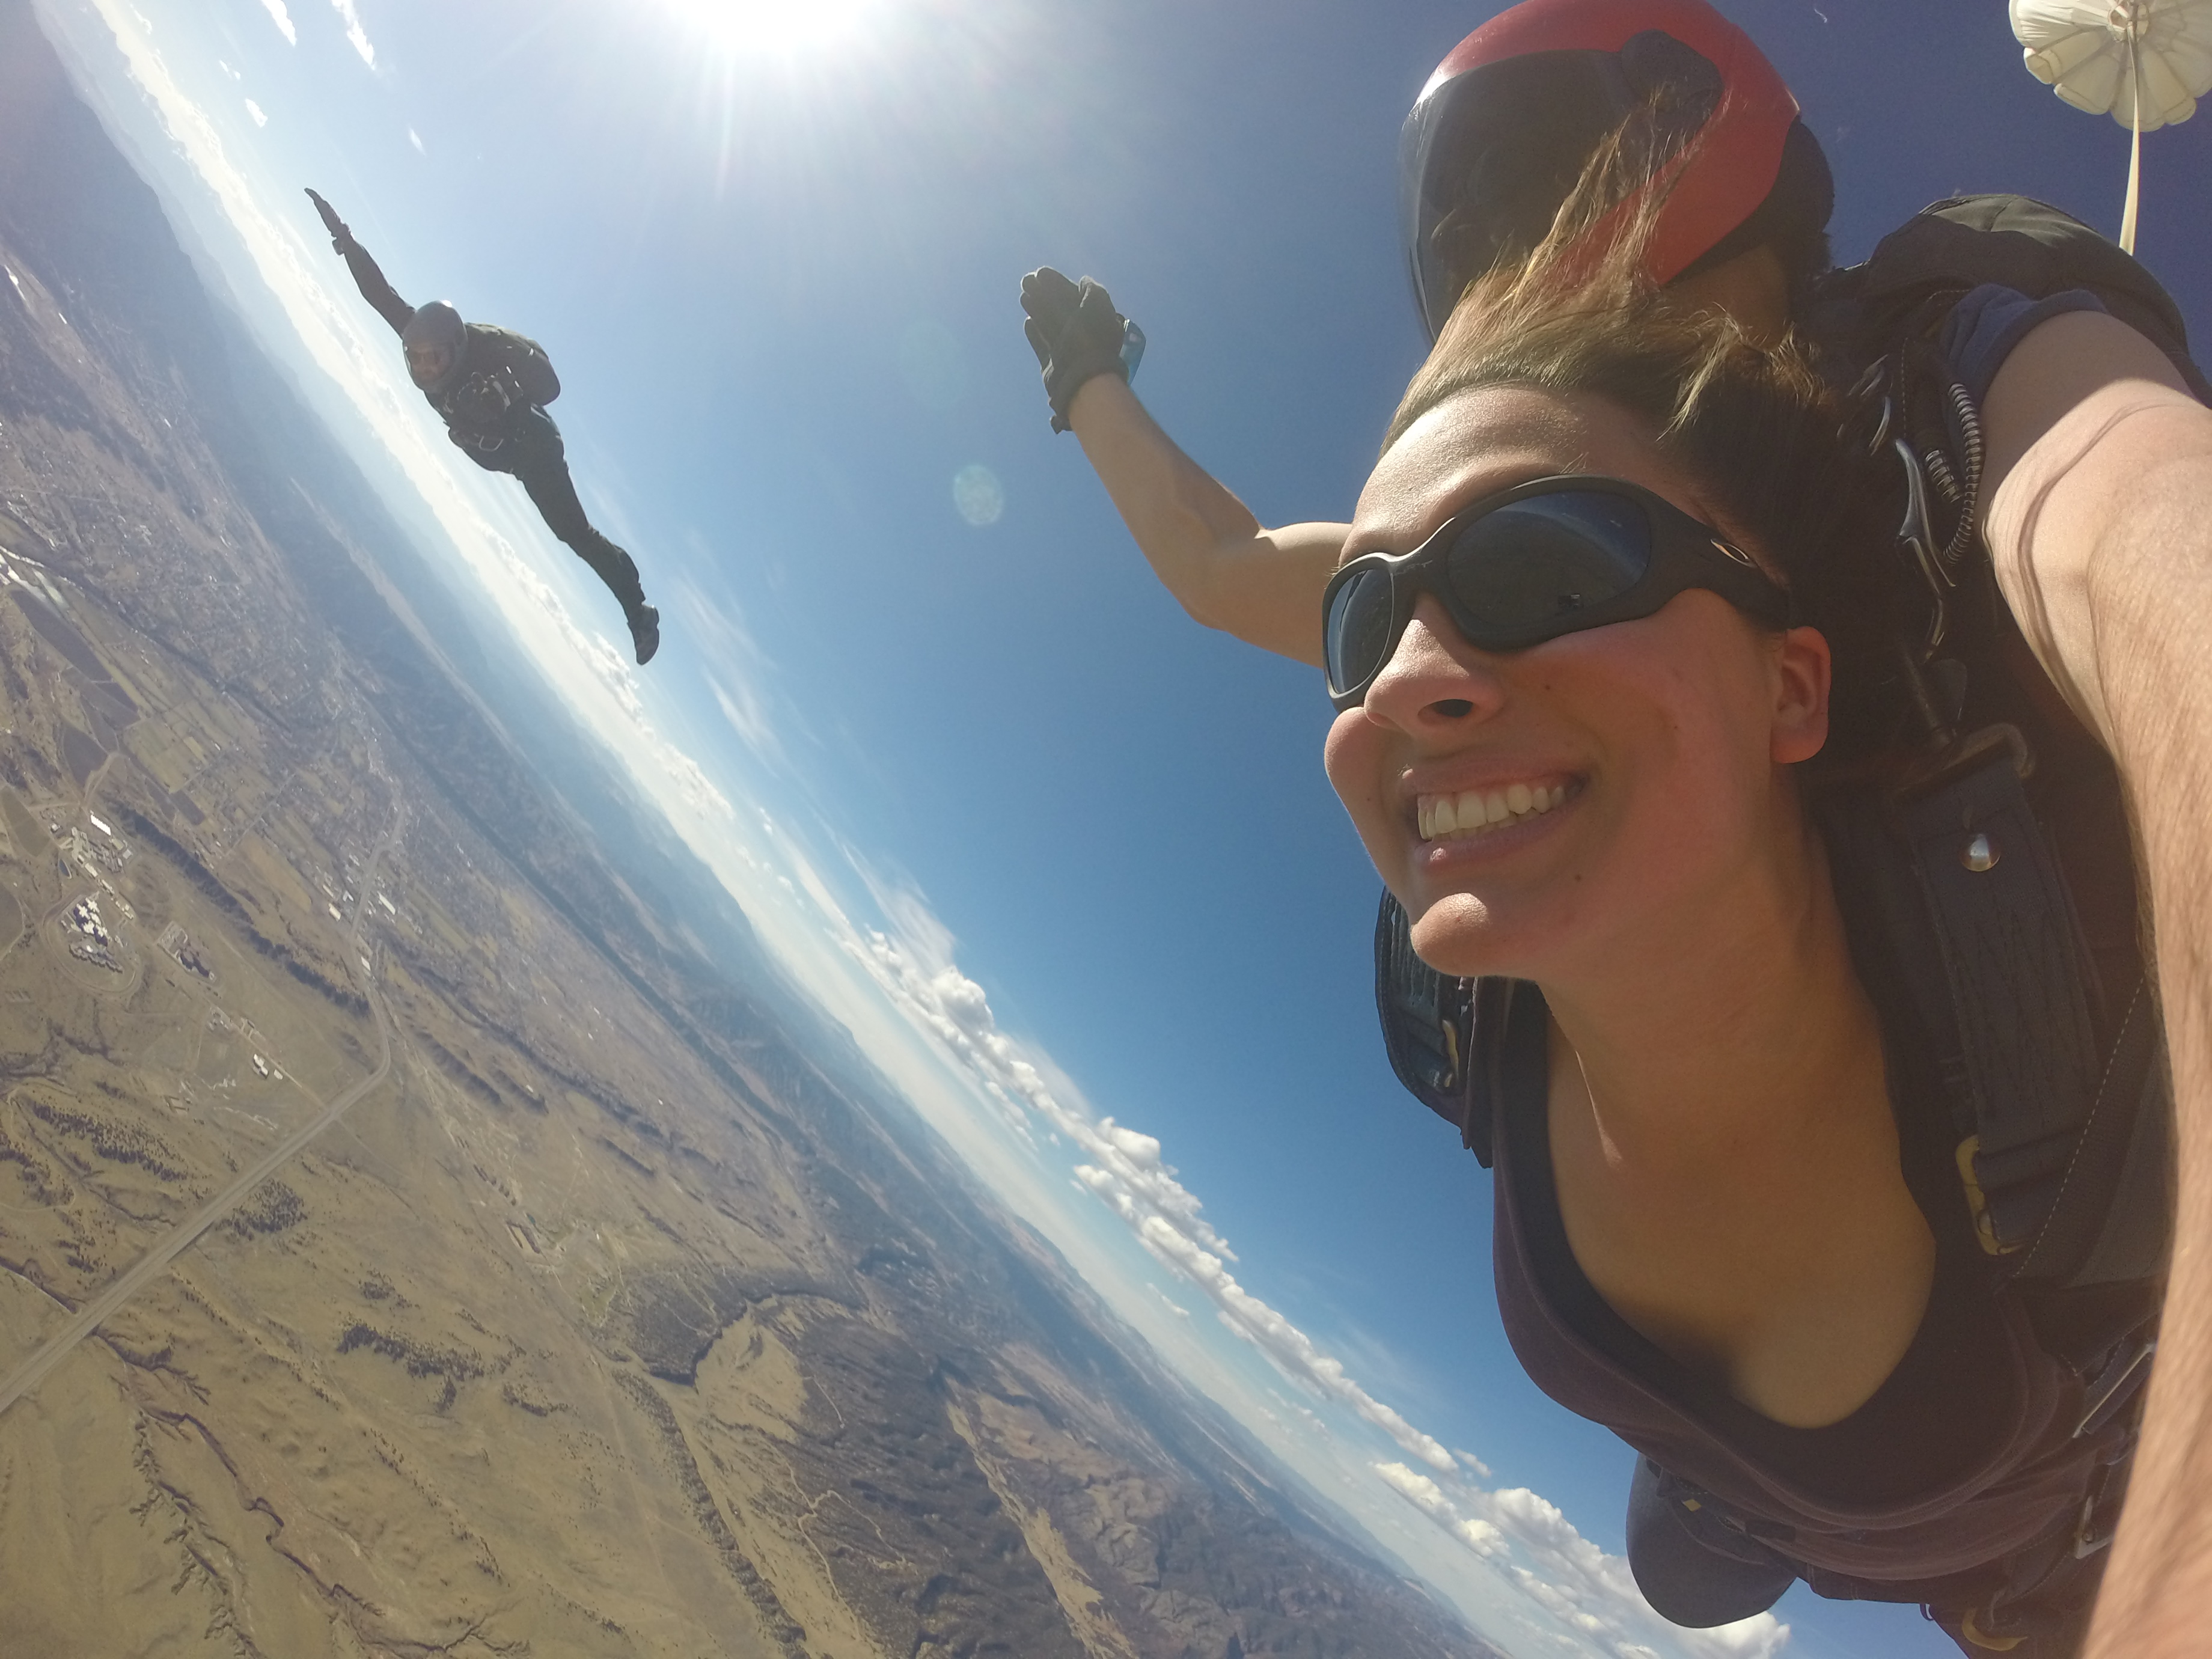 Skydiver Joins Tandem – Royal Gorge Skydive